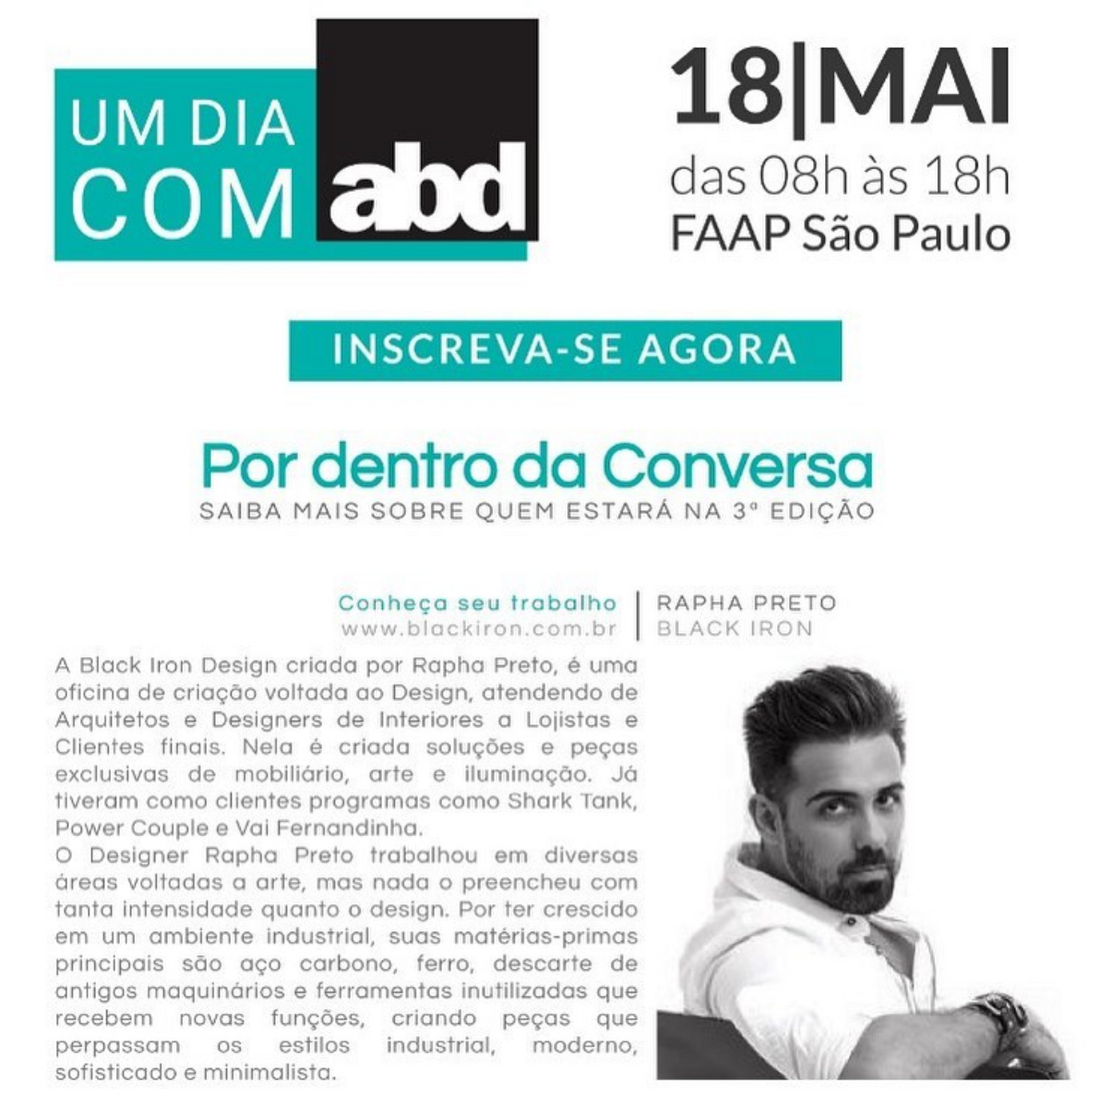 Talk ABD - Um dia com ABD - FAAP São Paulo